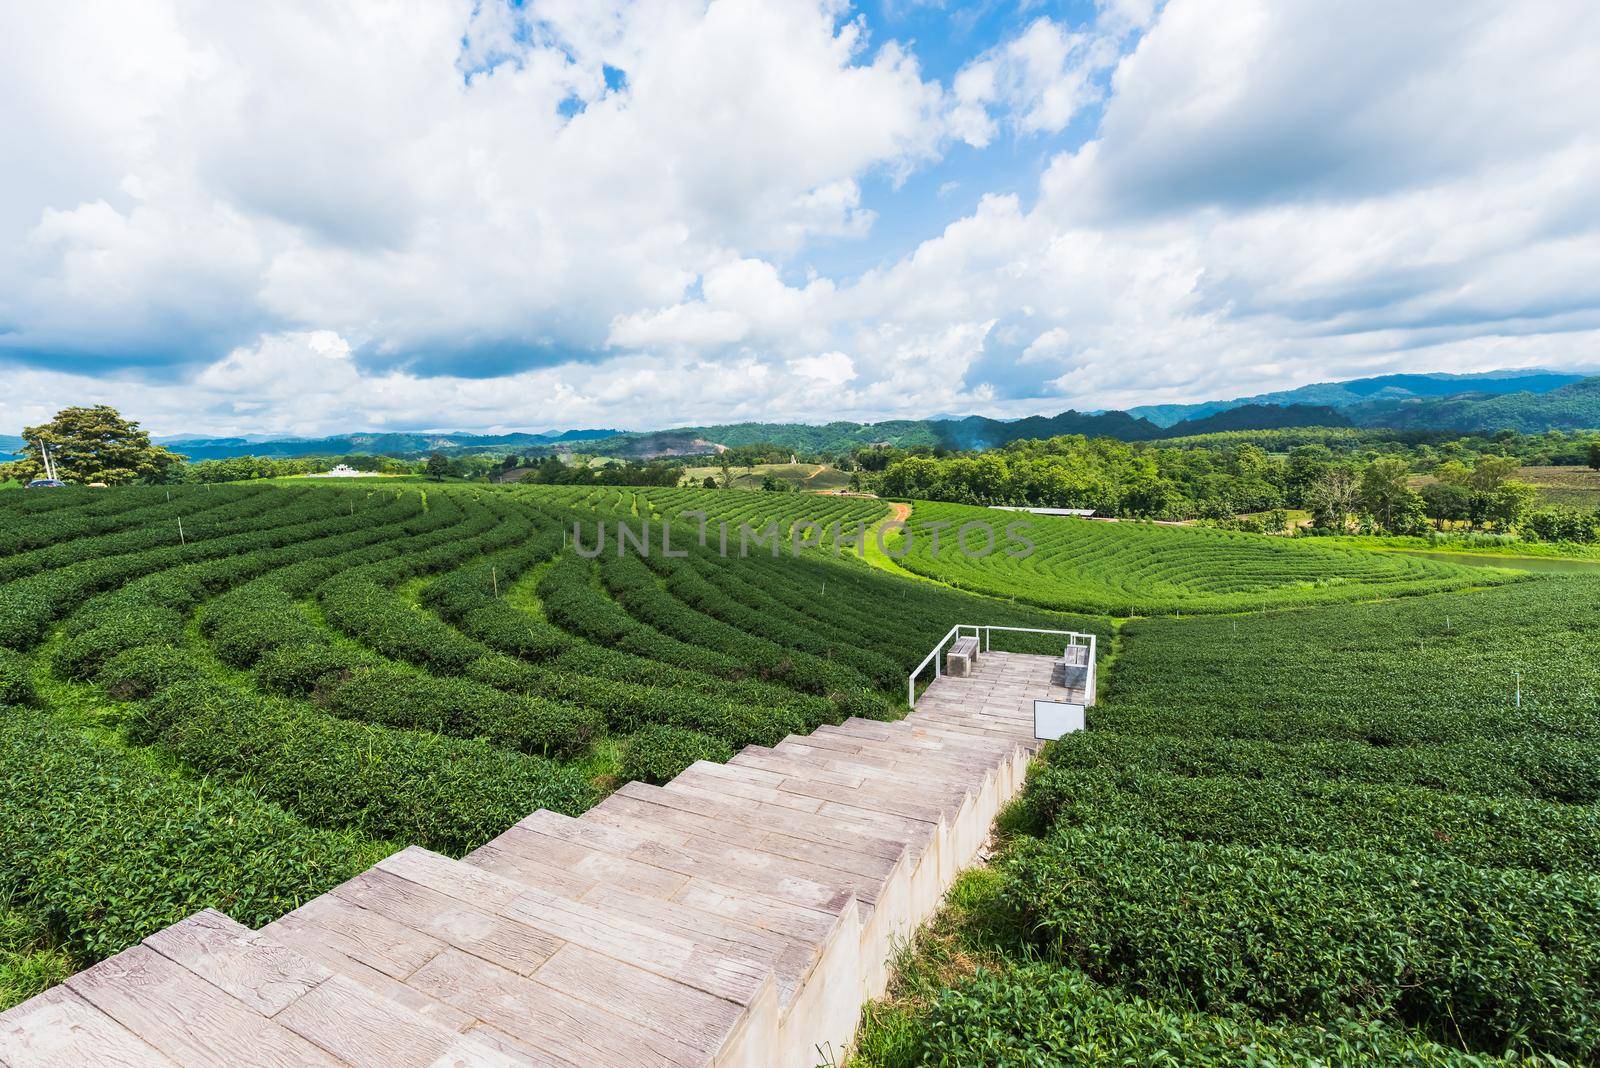 Tea farm at chiang rai, Thailand